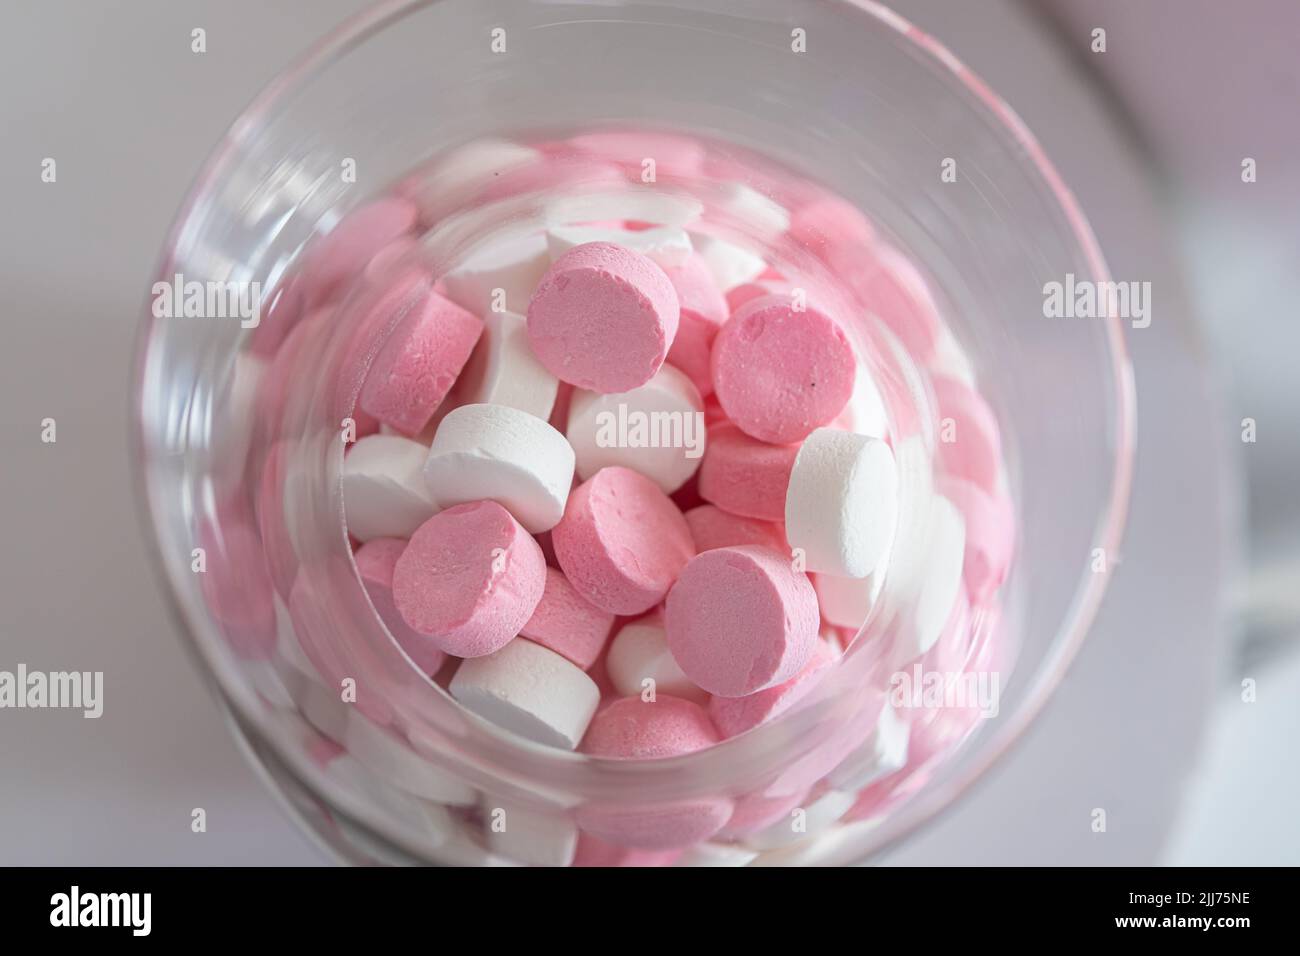 Dulces rosados y blancos en un tarro Foto de stock